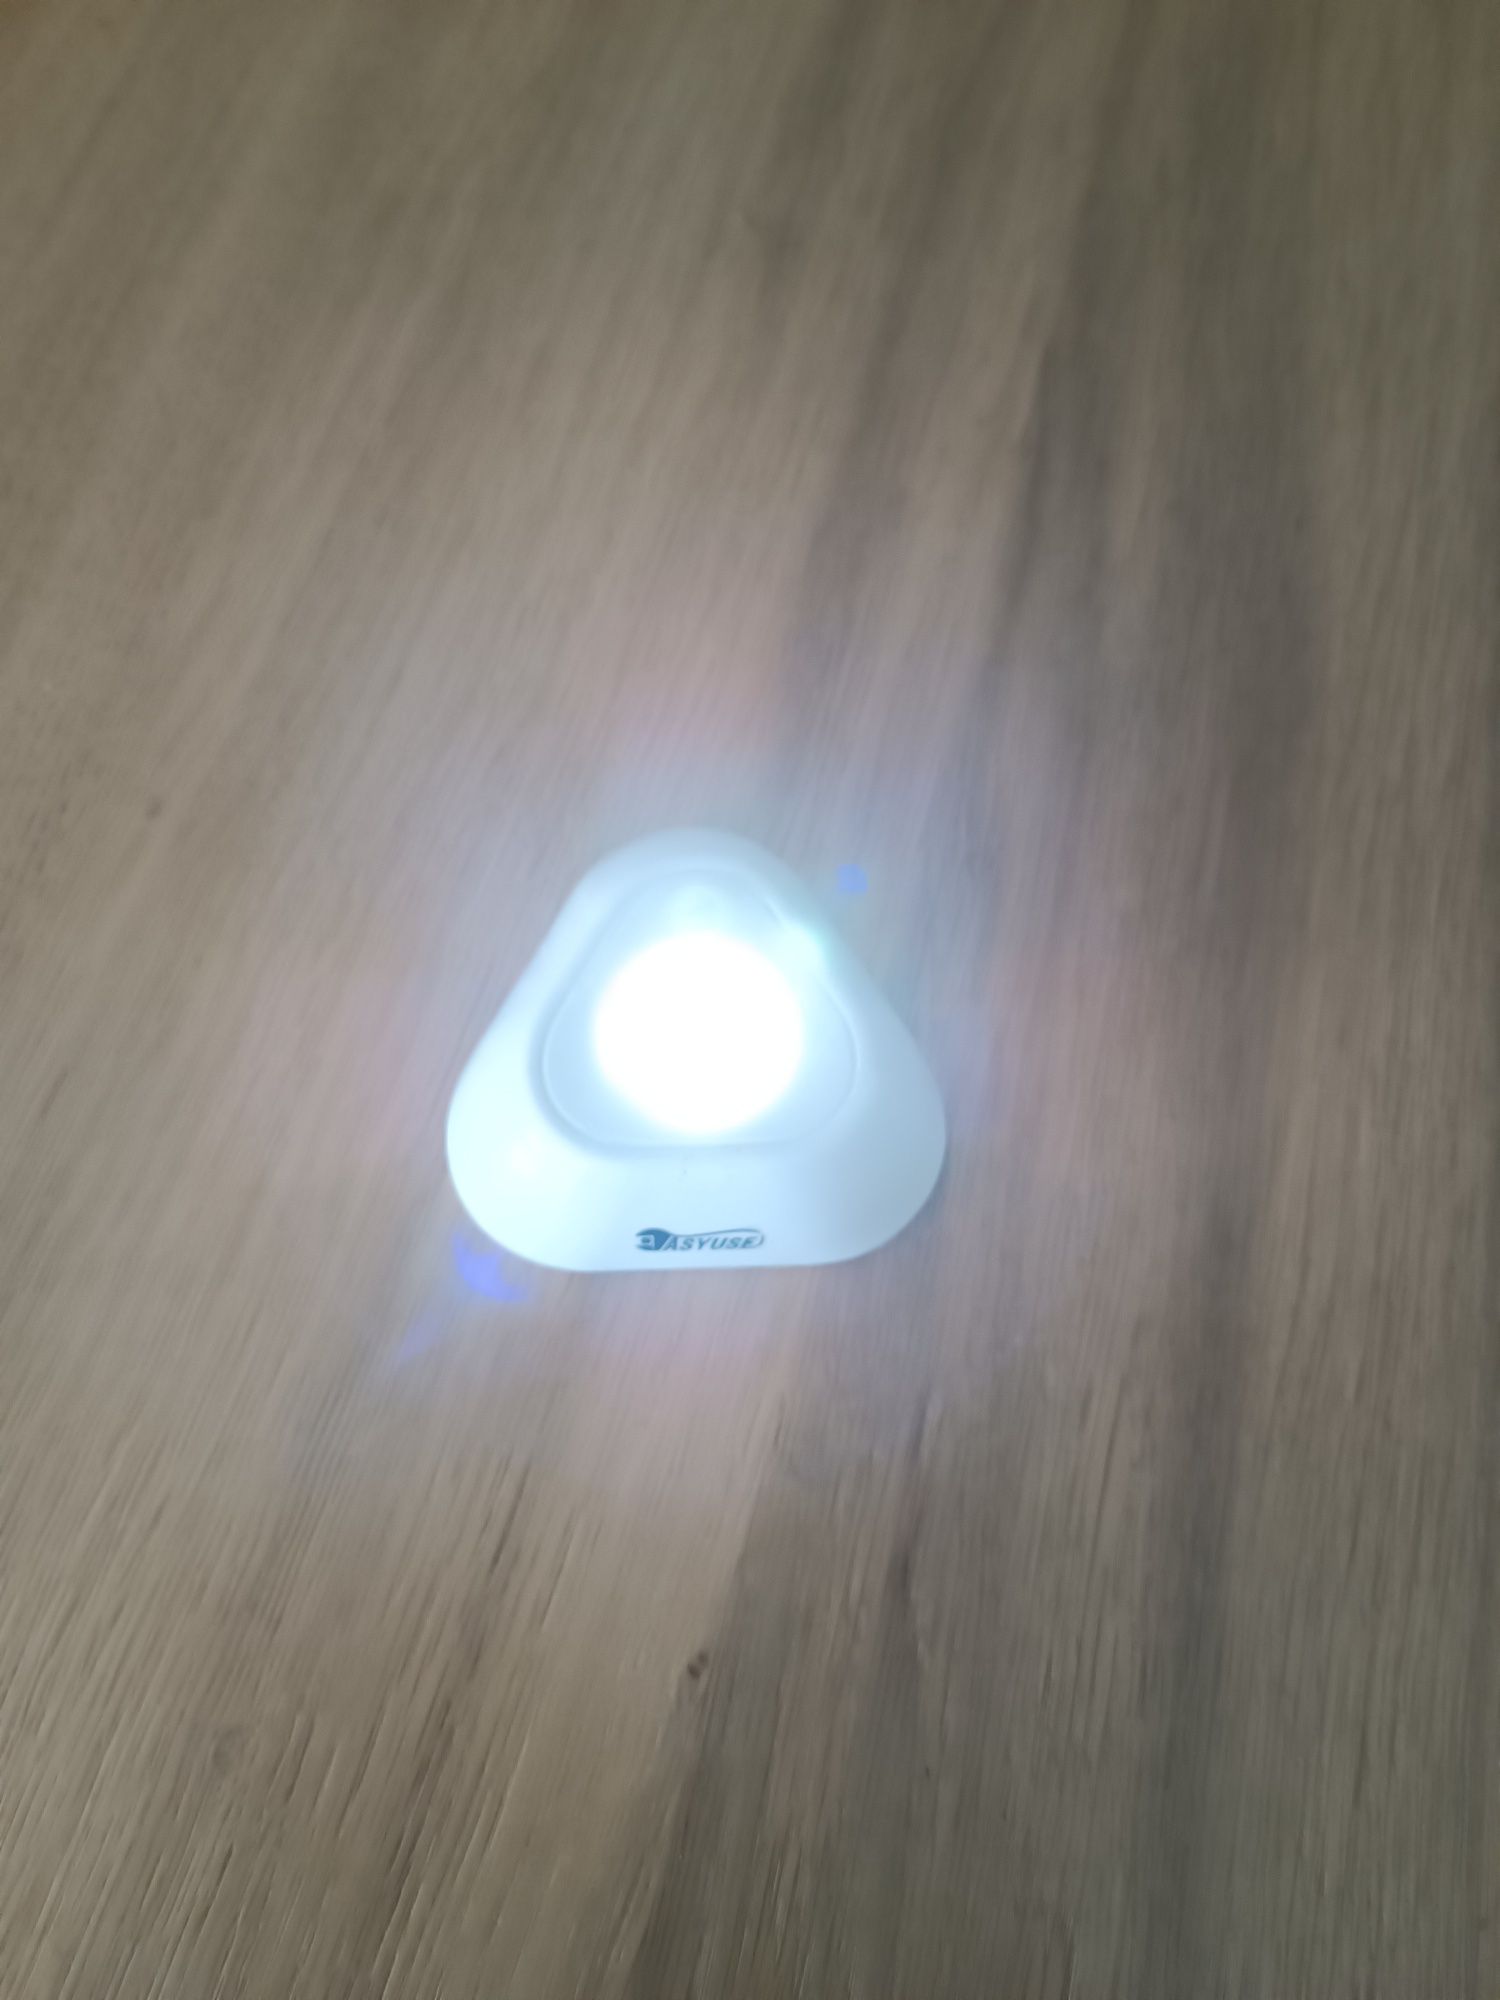 Luz de presença LED com sensor de movimento.
Id